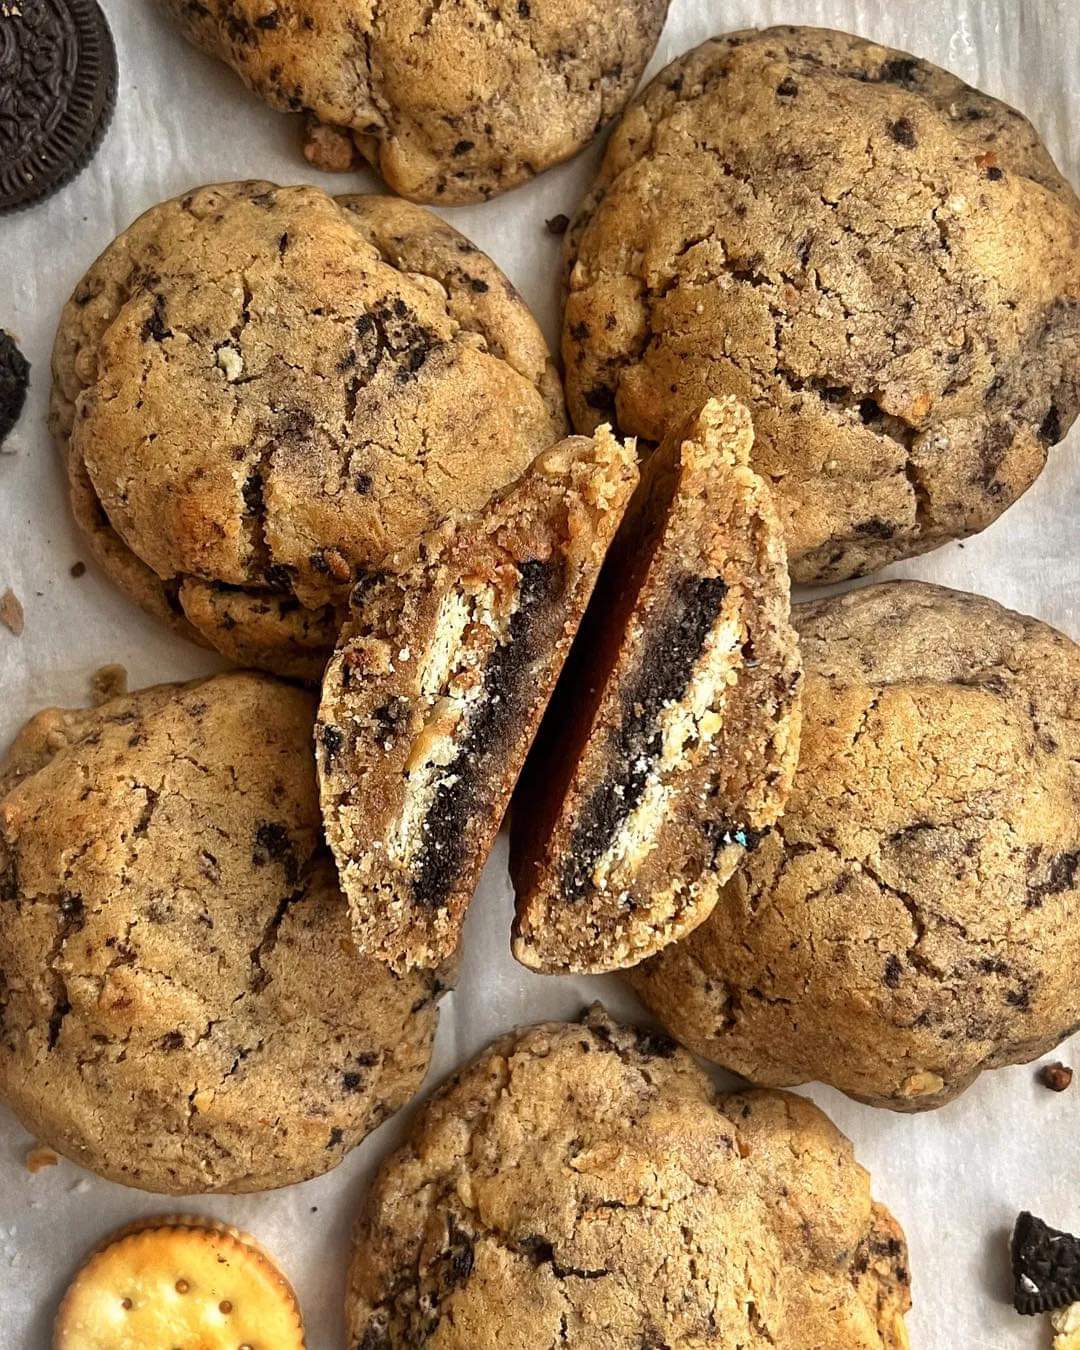 Gourmet Cookies by Big Tasty Bakery